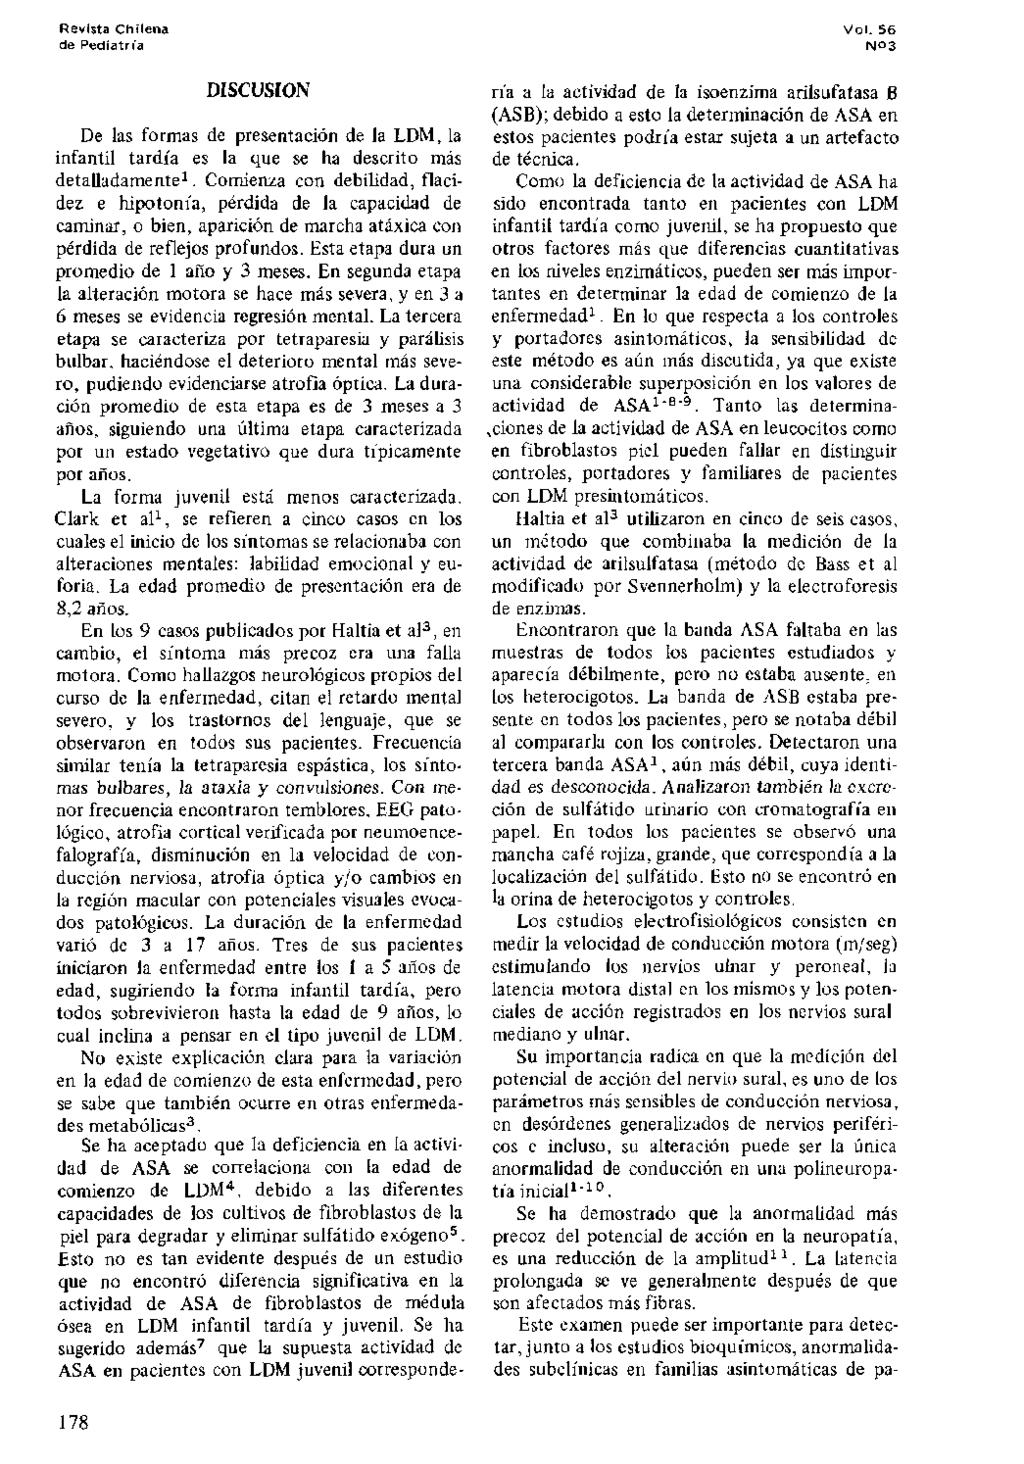 Revista Chilena de Pediatrfa DISCUSION De las formas de presentation de la LDM, la infantil tardia es la que se ha descrito mas detalladamente 1.